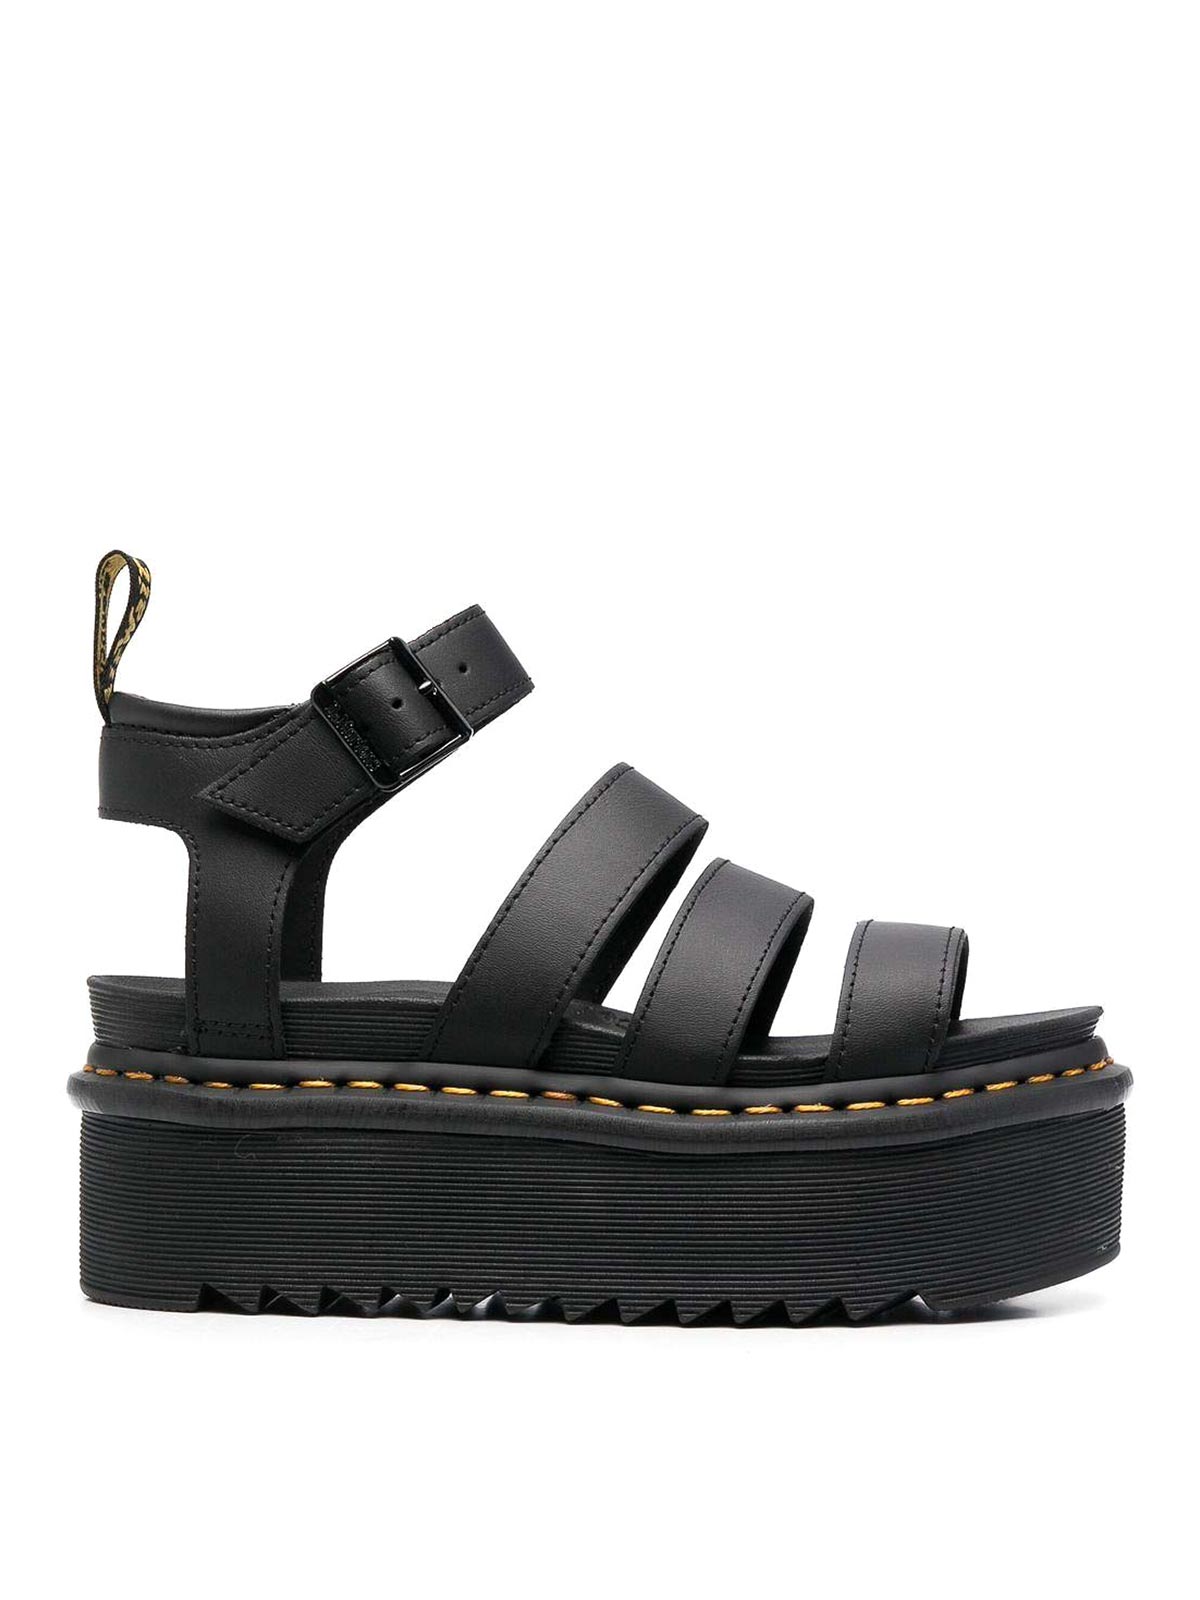 Sandals Dr. Martens - Blaire quad leather sandals - BLAIREQUAD27296001